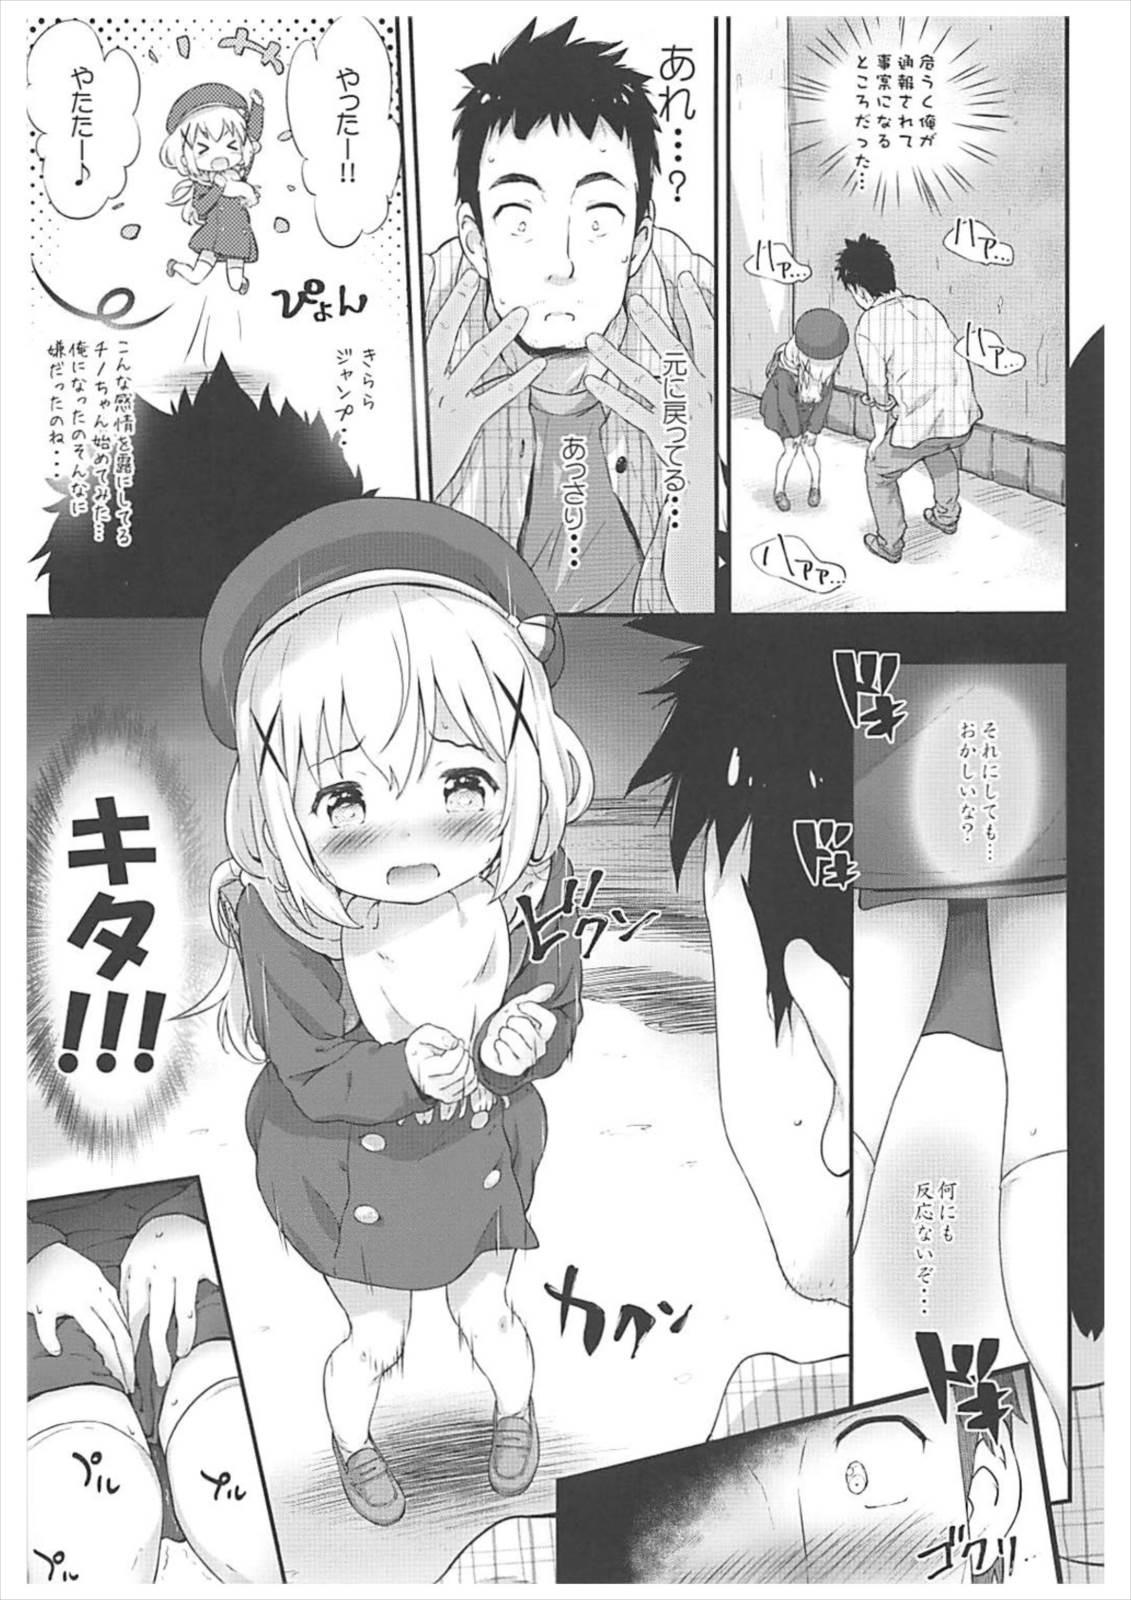 Parties Toro Musume 14 Chino-chan Hajimemashita 2 kai - Gochuumon wa usagi desu ka Gaydudes - Page 6